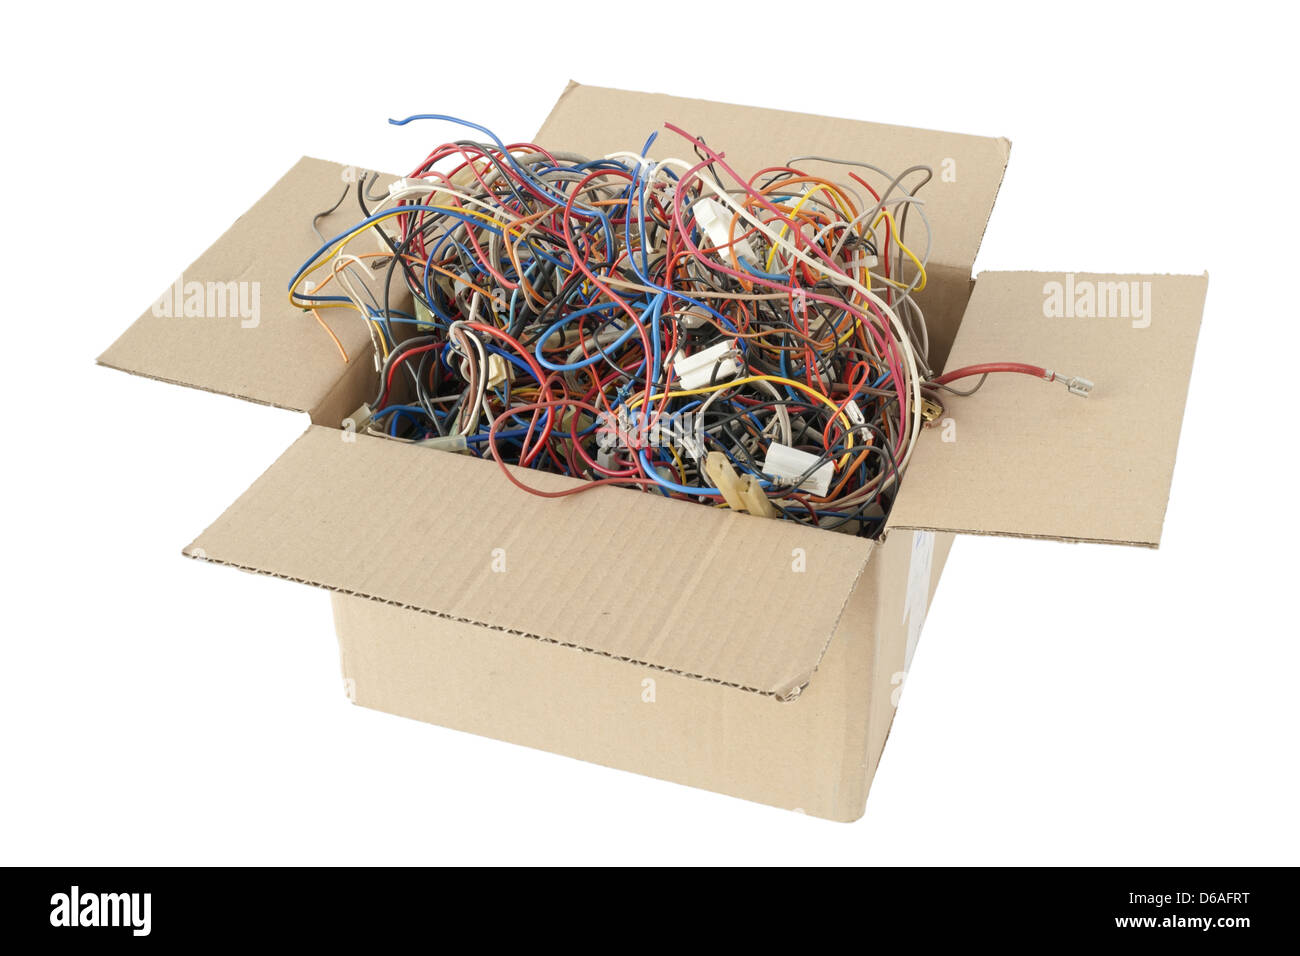 El caos de piezas defectuosas de cables de cobre Foto de stock